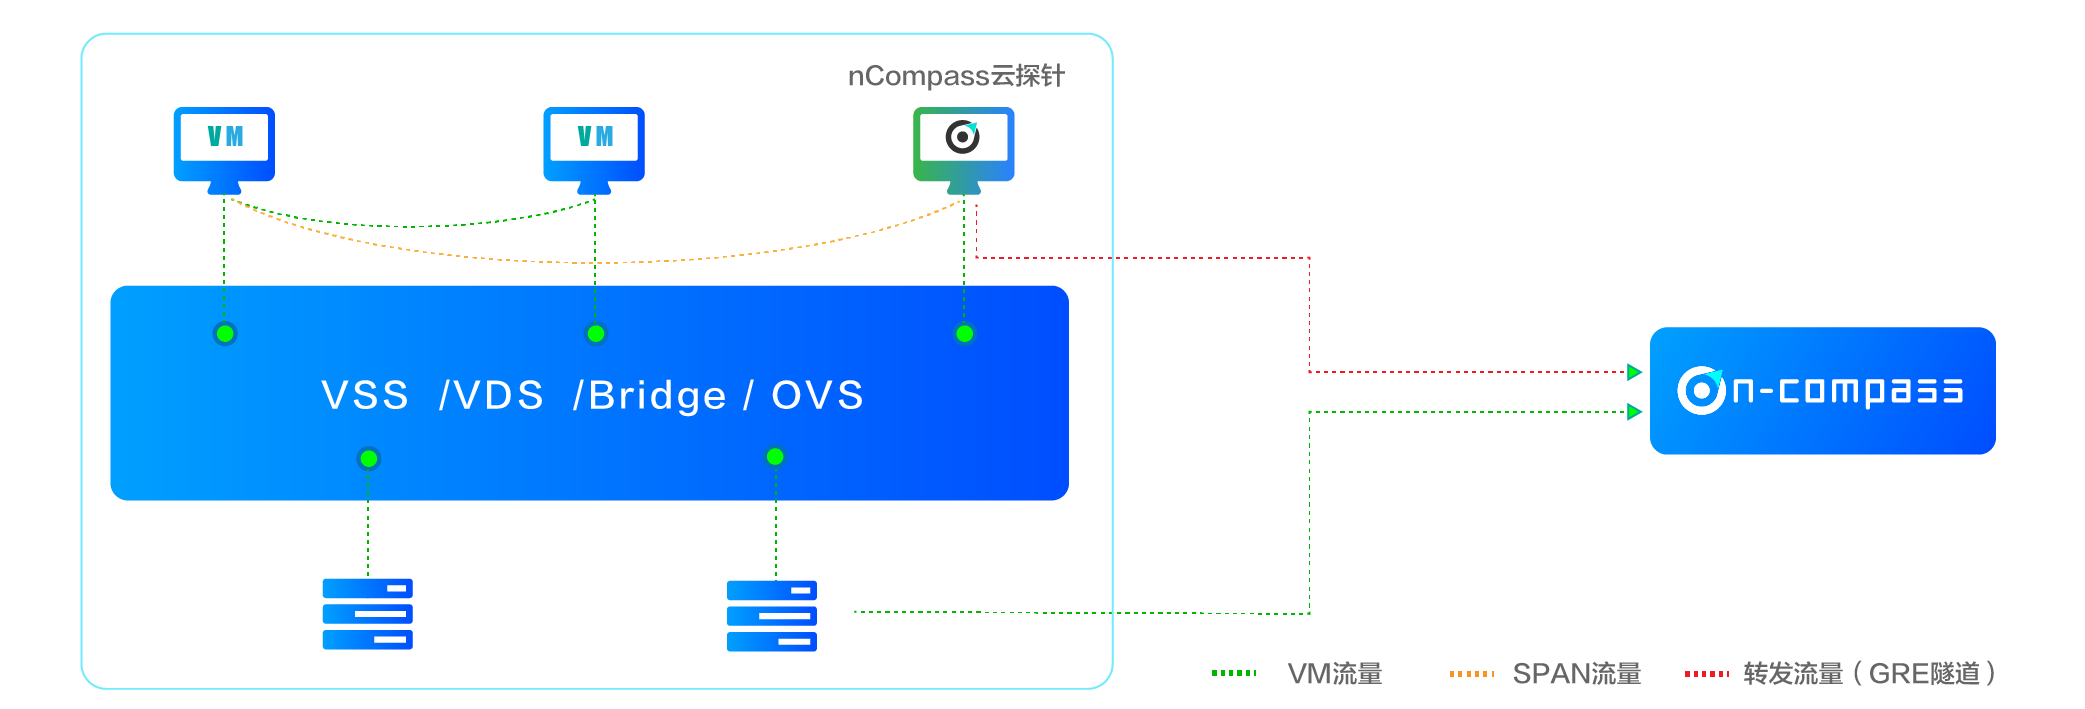 Bonree NPM可部署在用户的共有云或私有云环境 ，不论是腾讯 、阿里和华为的公有云ECS环境 ，还是VMware 、KVM等私有云环境 ，均可通过在宿主机中部署Reesii云探针 ，以VM或Agent的方式 ，采集虚拟交换机采集流量数据 ，用于感知及分析虚拟化网络 、组件 、VM的异常性能事件 。